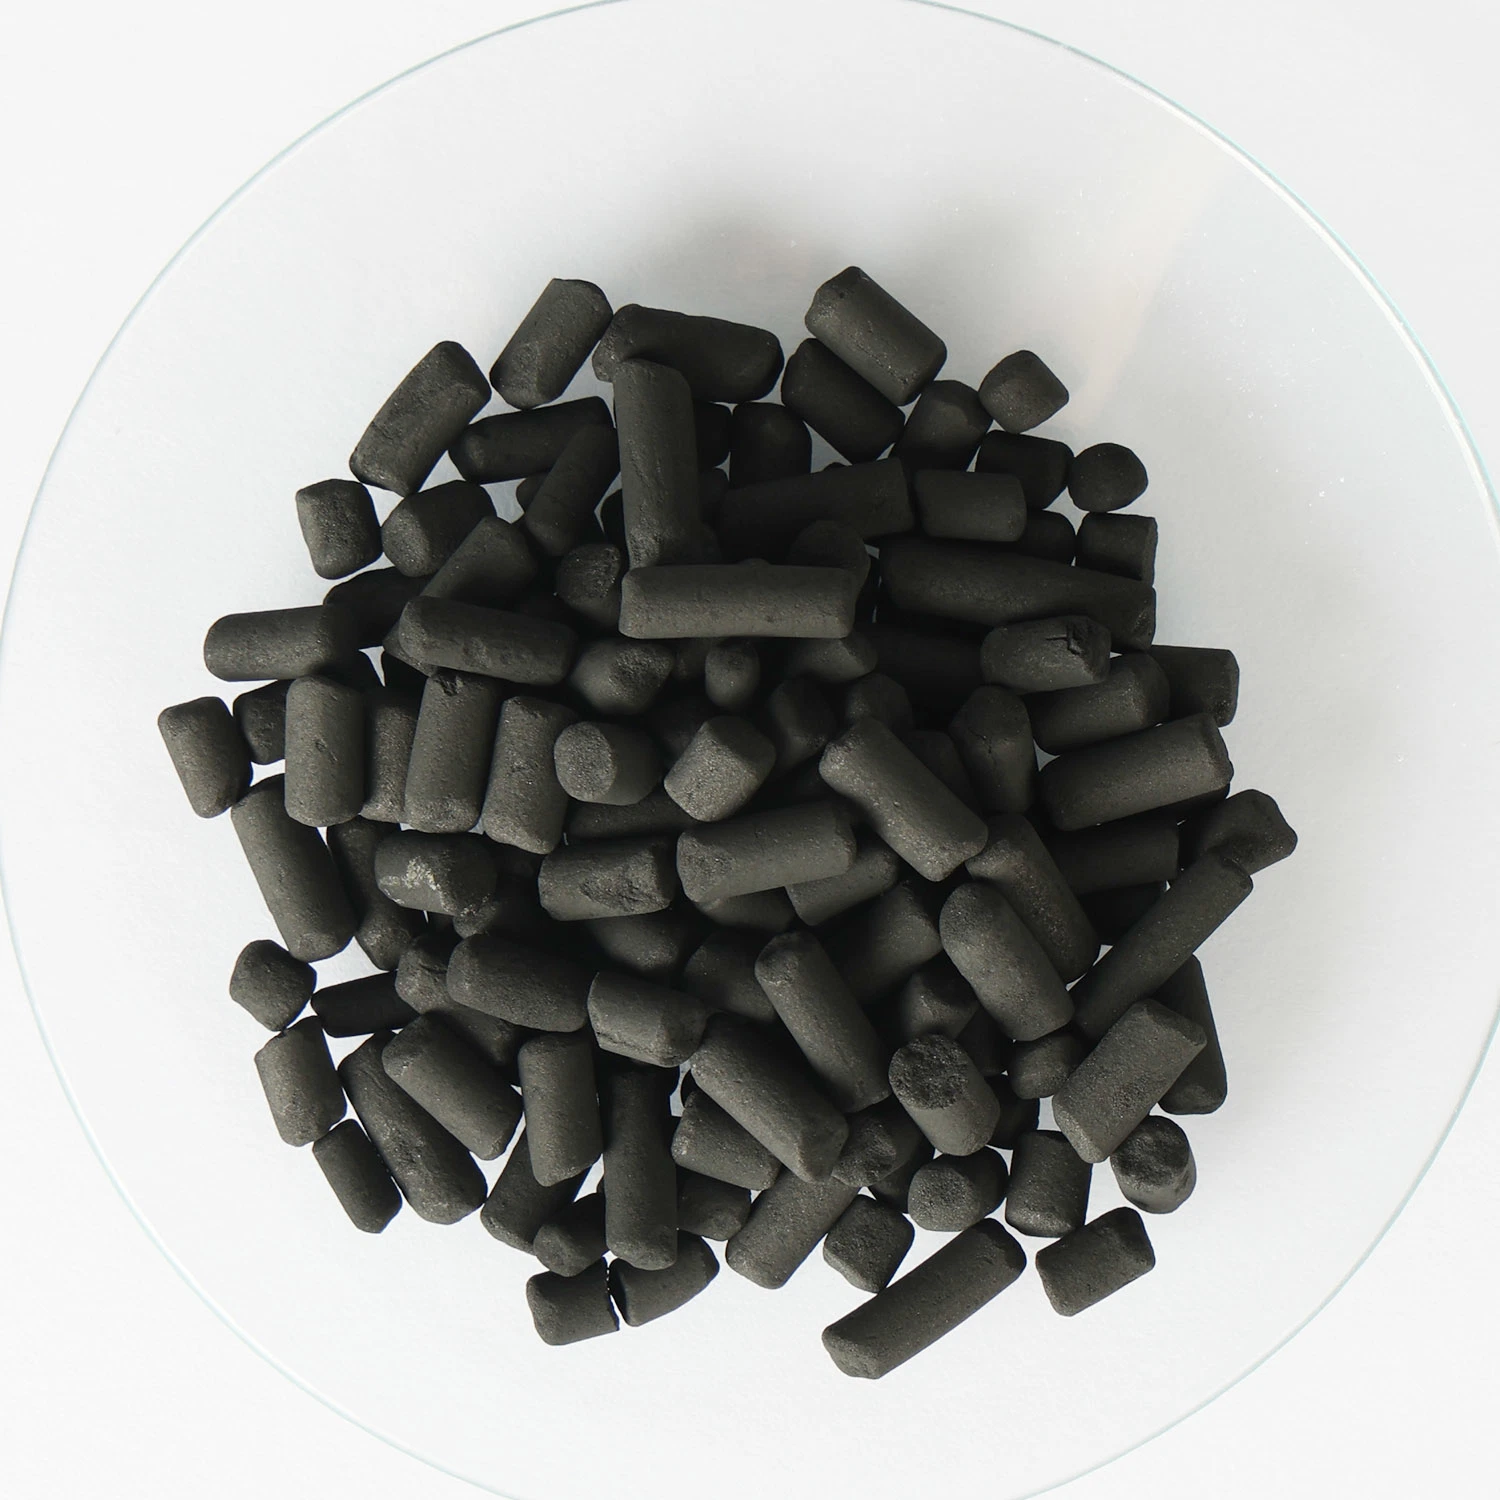 Доступно 4 мм размер частиц угля черного цвета виде столбцов с активированным углем применяется в области добычи нефти и газа